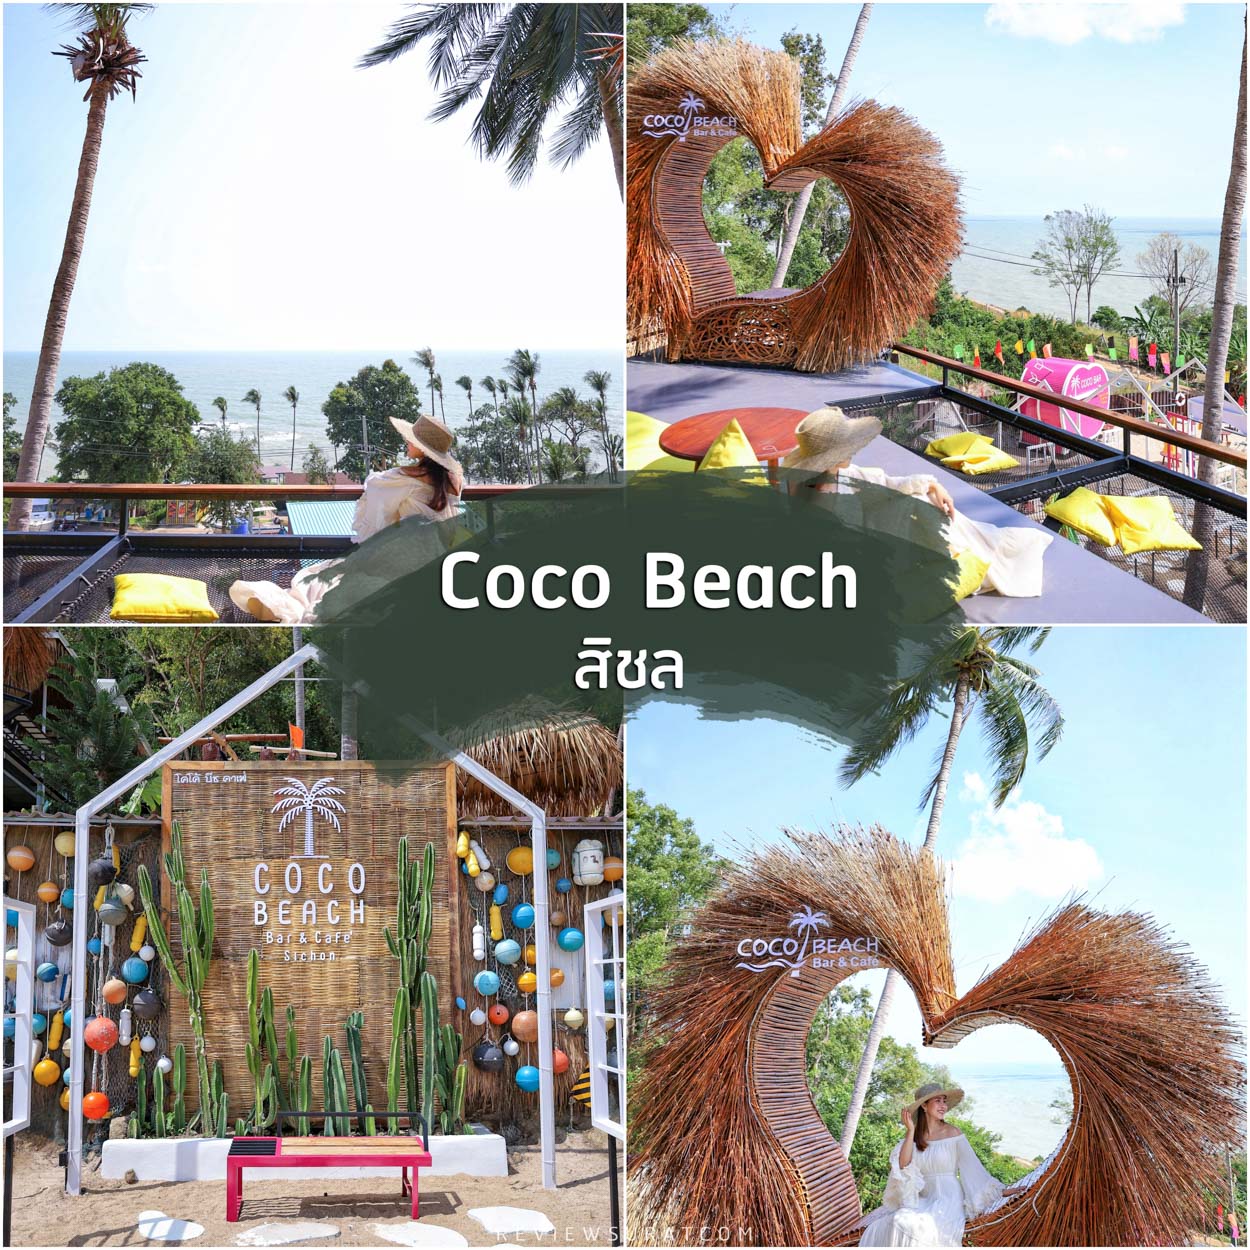 Coco-Beach-Bar-Cafe คาเฟ่เปิดใหม่--อ.สิชล-จ.นครศรีธรรมราช
คาเฟ่เปิดใหม่-สไตล์บาหลี-มีมุมถ่ายรูปสวยๆเพียบ-บรรยากาศวิวทะเล-เหมาะแก่การมานั่งชิลๆ-ฟังเพลง-จิบเครื่องดื่มเย็นๆ-กินขนมอร่อยๆ-ฟินไปอีกก
 ที่เที่ยวนครศรี,จุดเช็คอินนครศรี,ที่พักนครศรี,แคมป์ปิ้งนครศรี